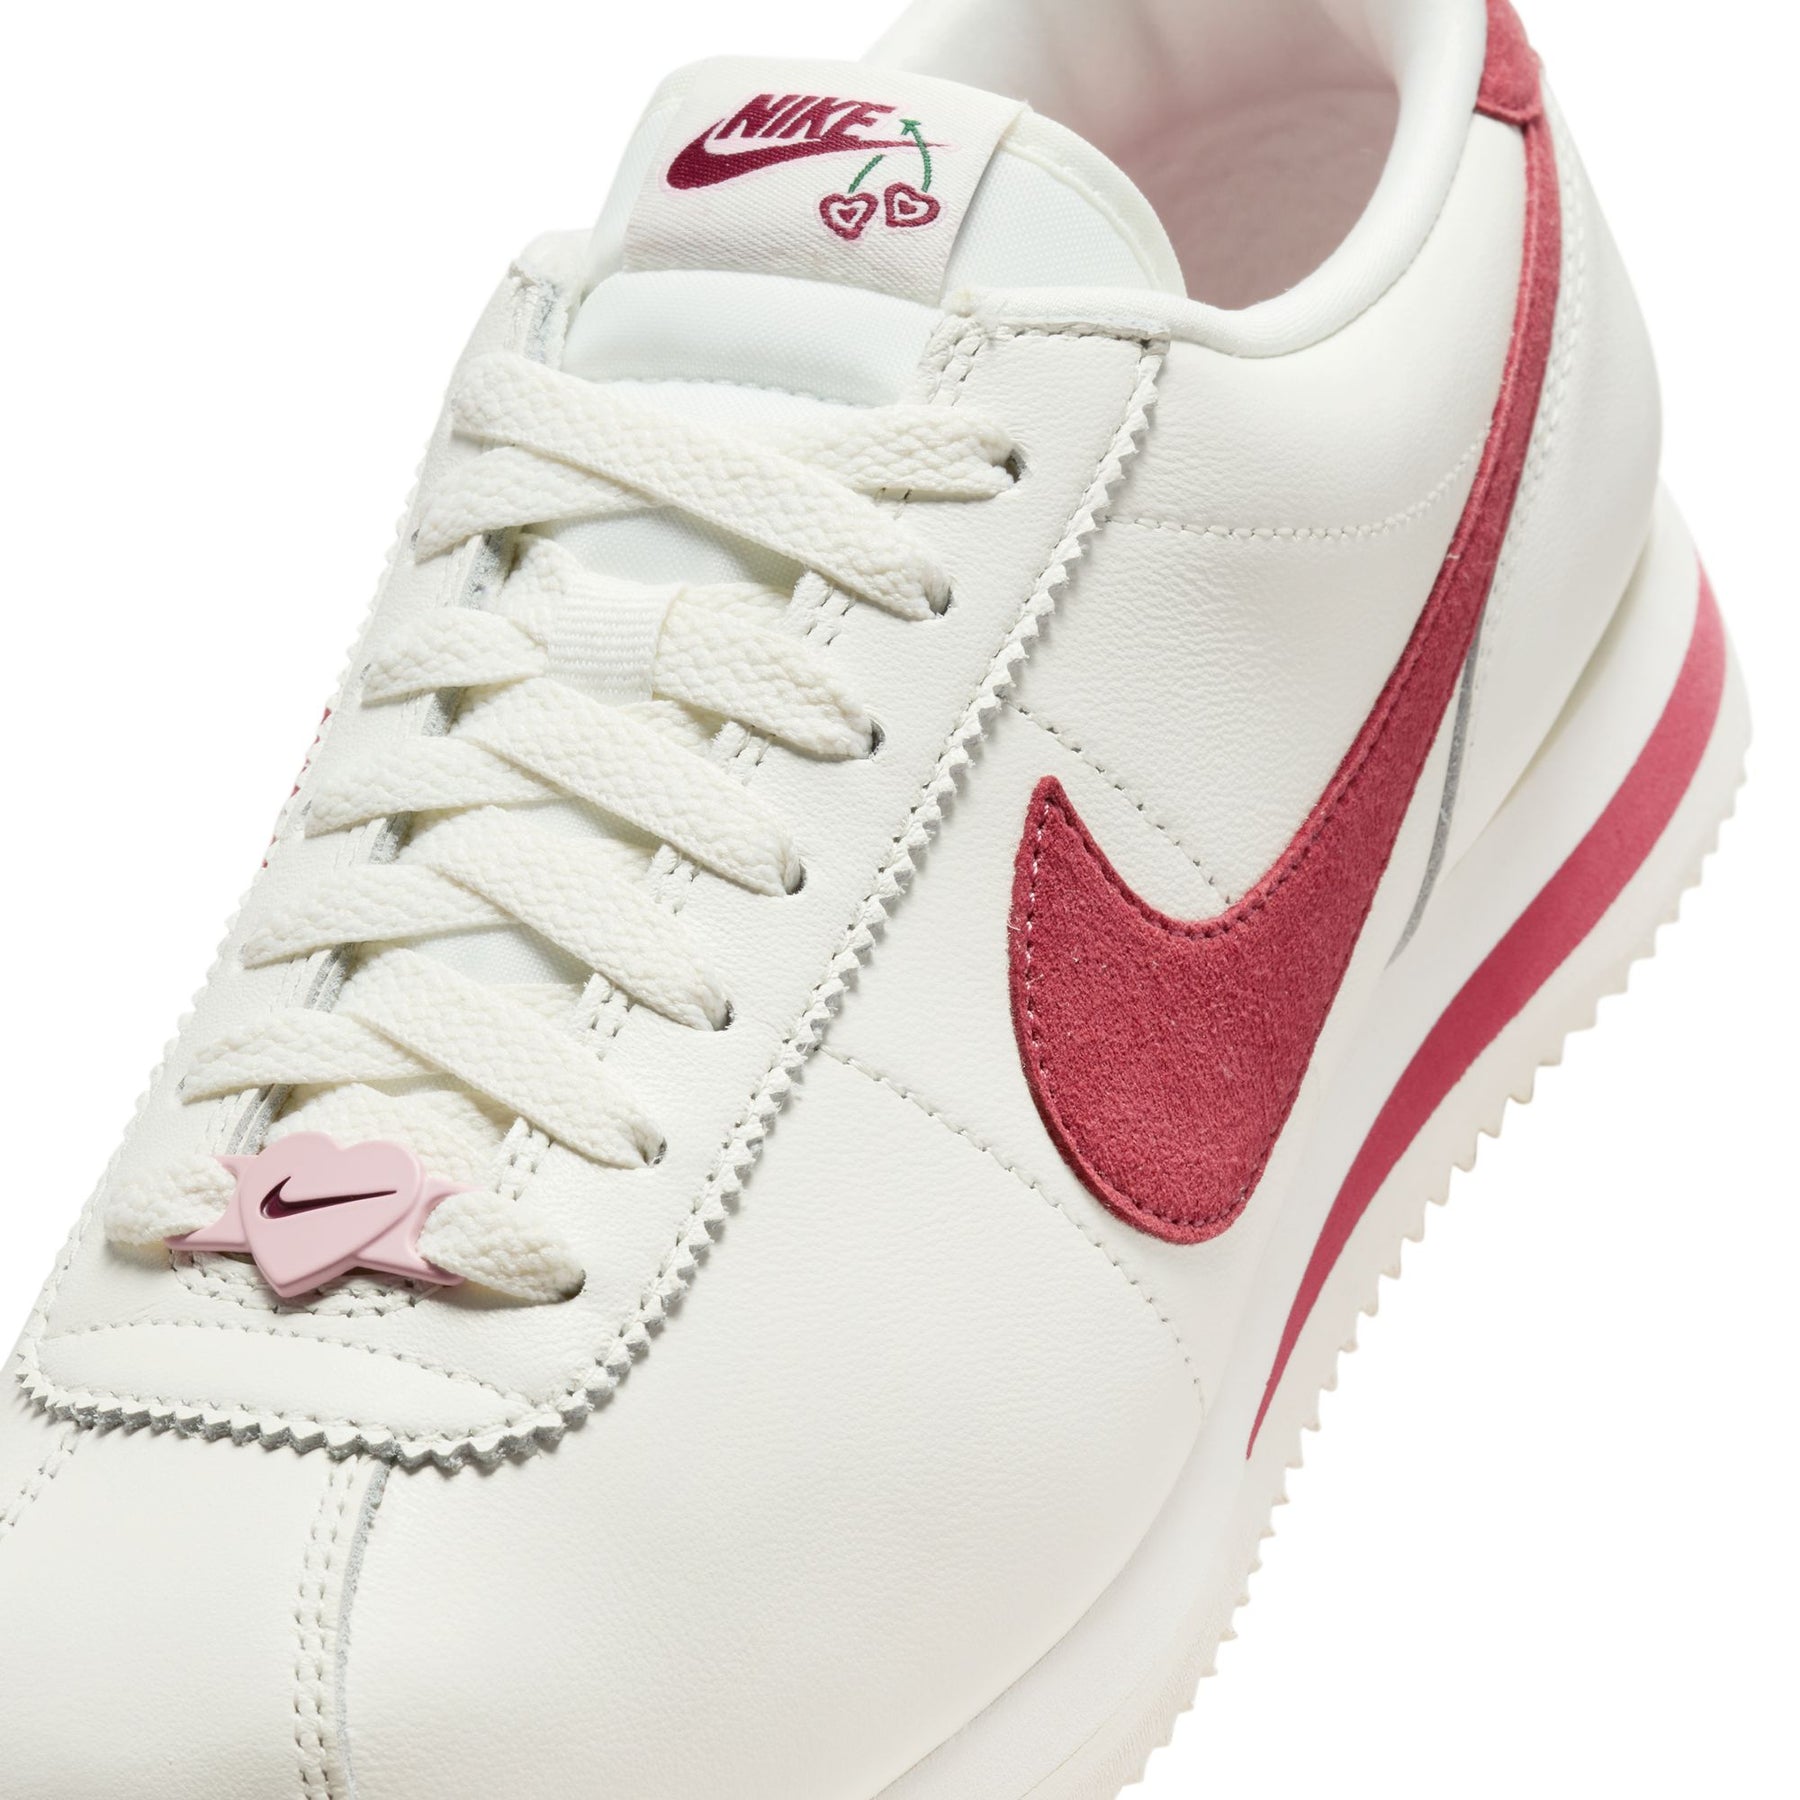 WMNS Nike Cortez SE "Valentine's Day"